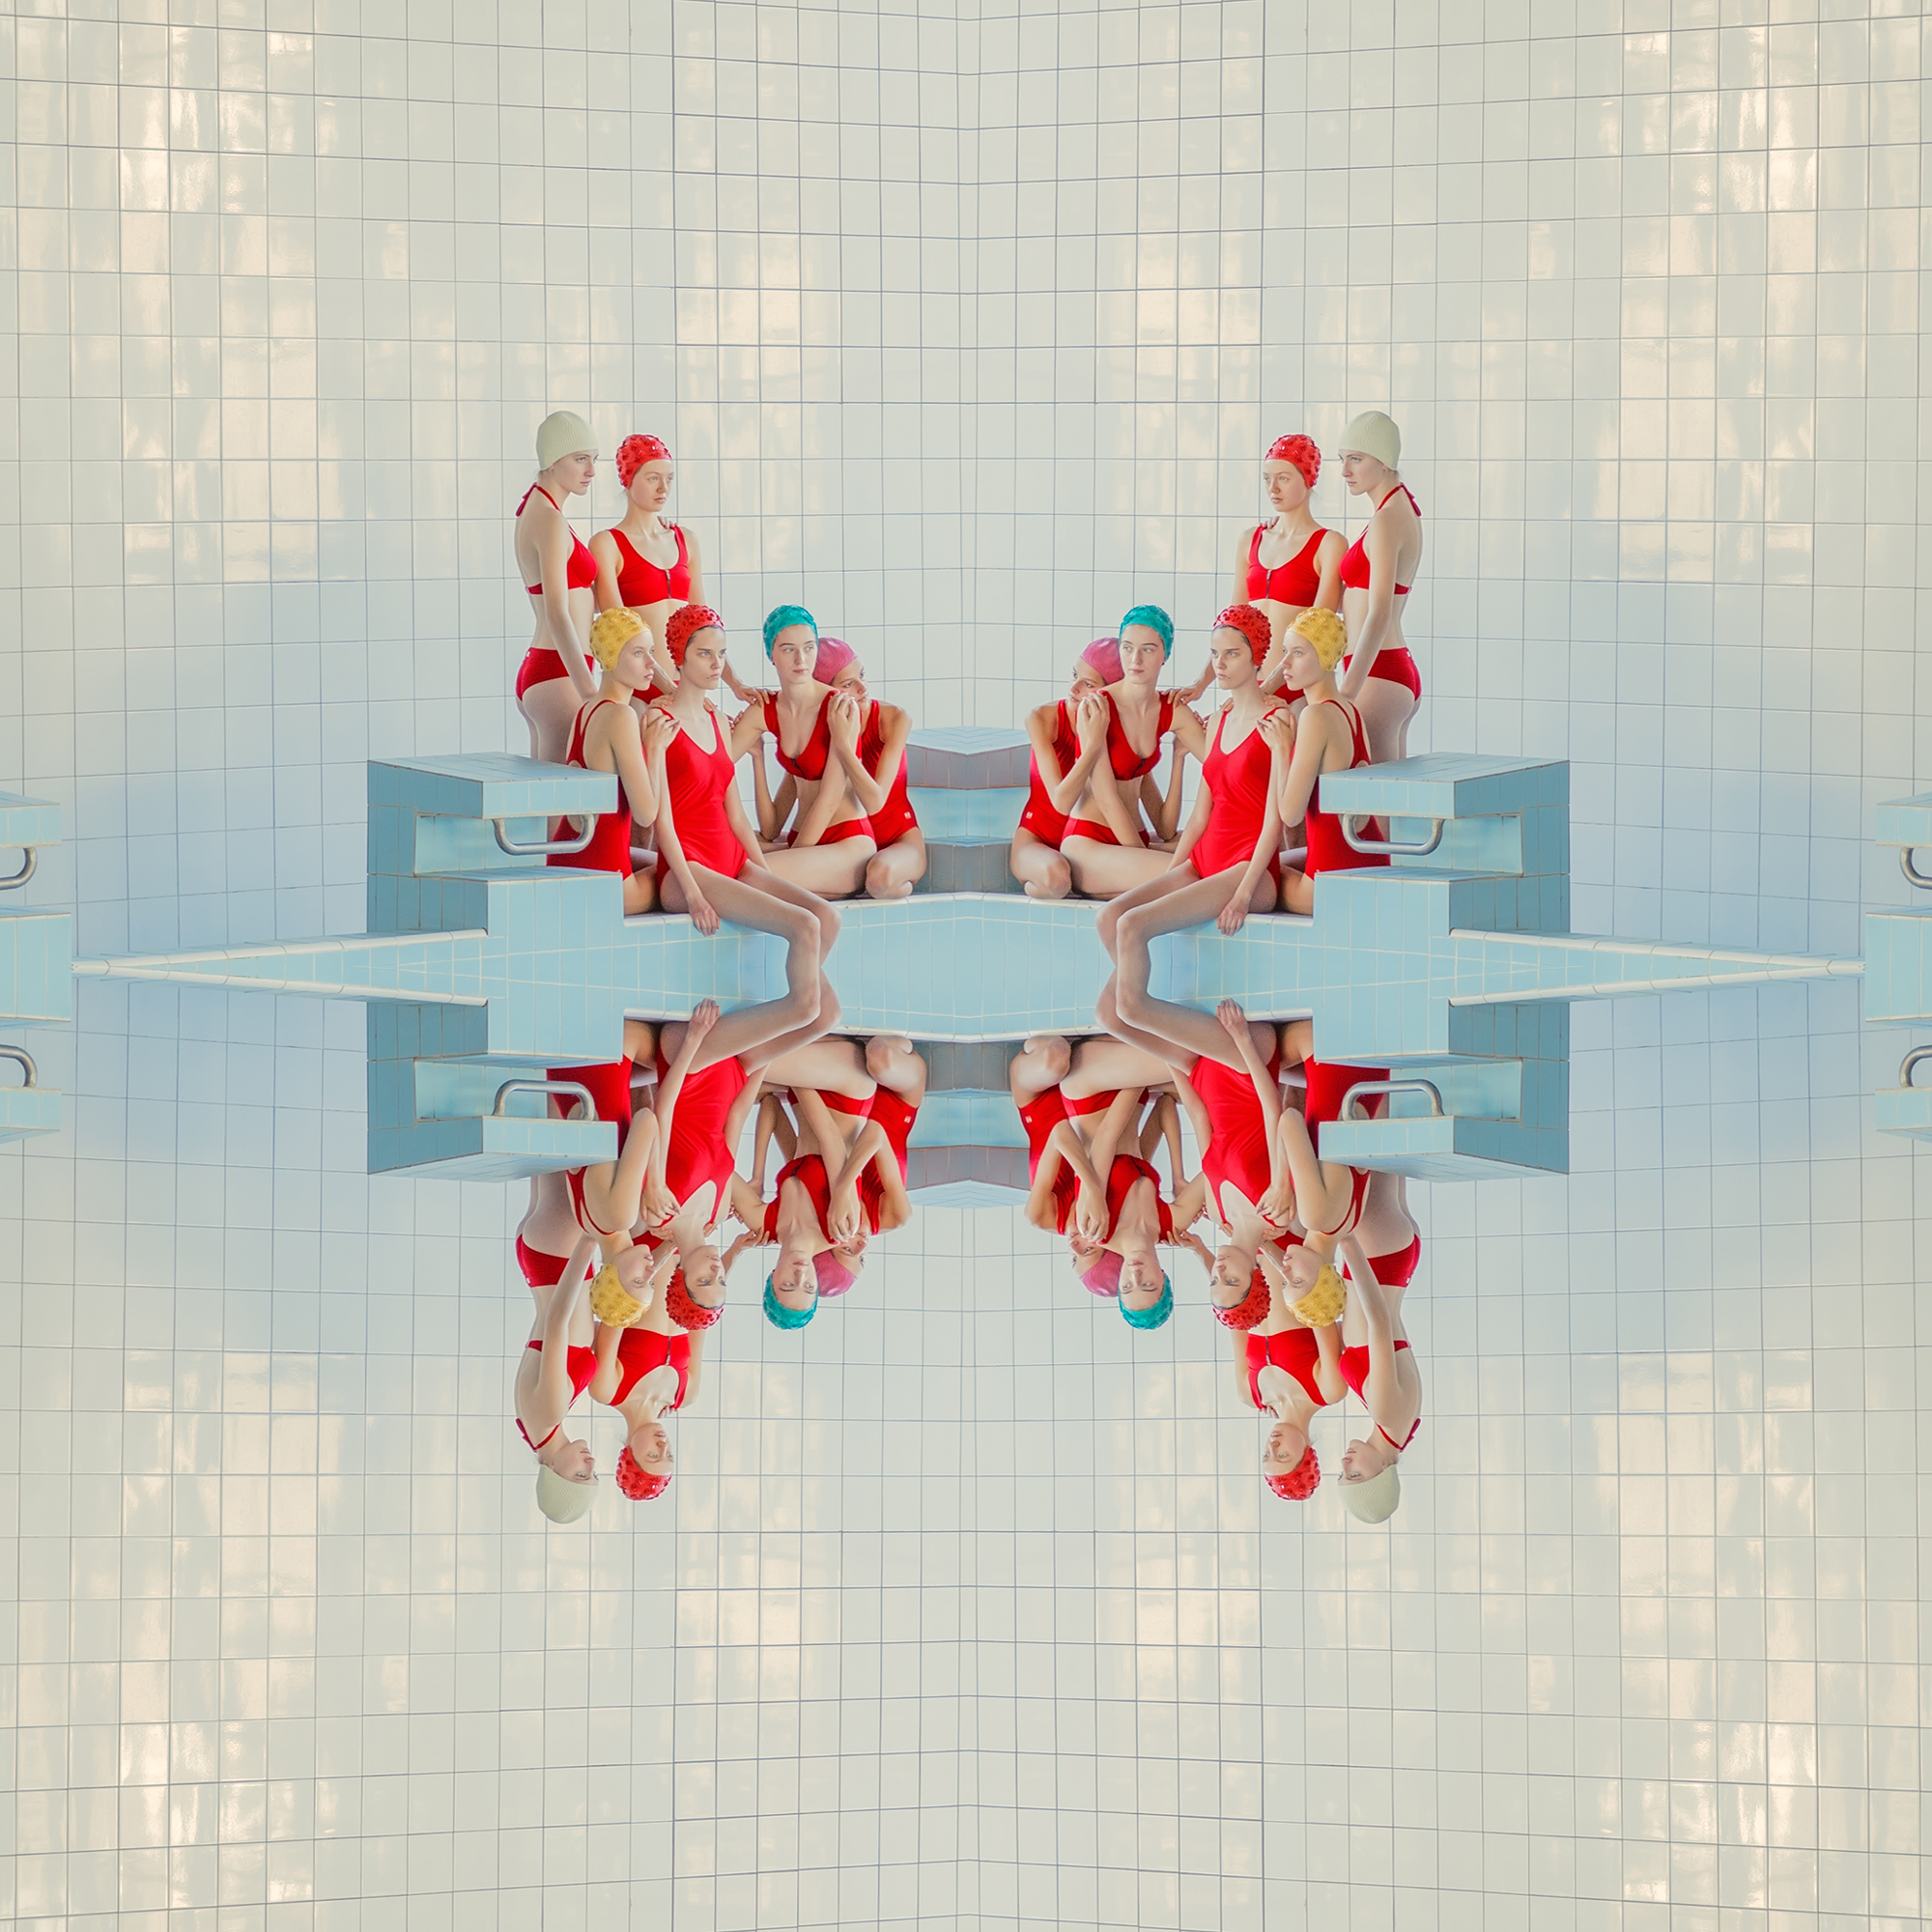 Symétries et réflexions dans les piscines de Mária Švarbová